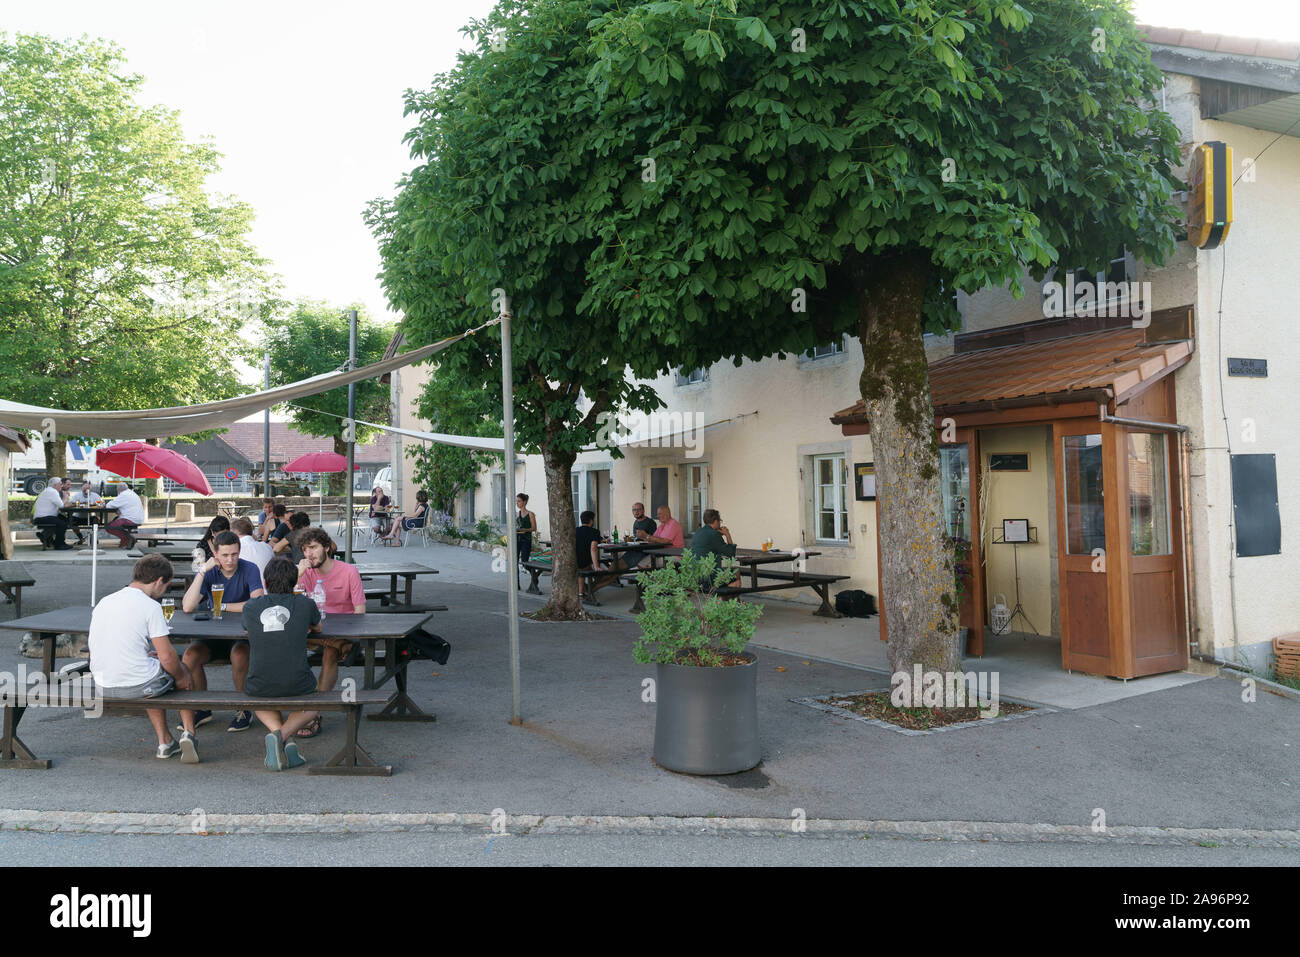 Terrace with people Cafe du Soleil, Saignelégier, Switzerland Stock Photo